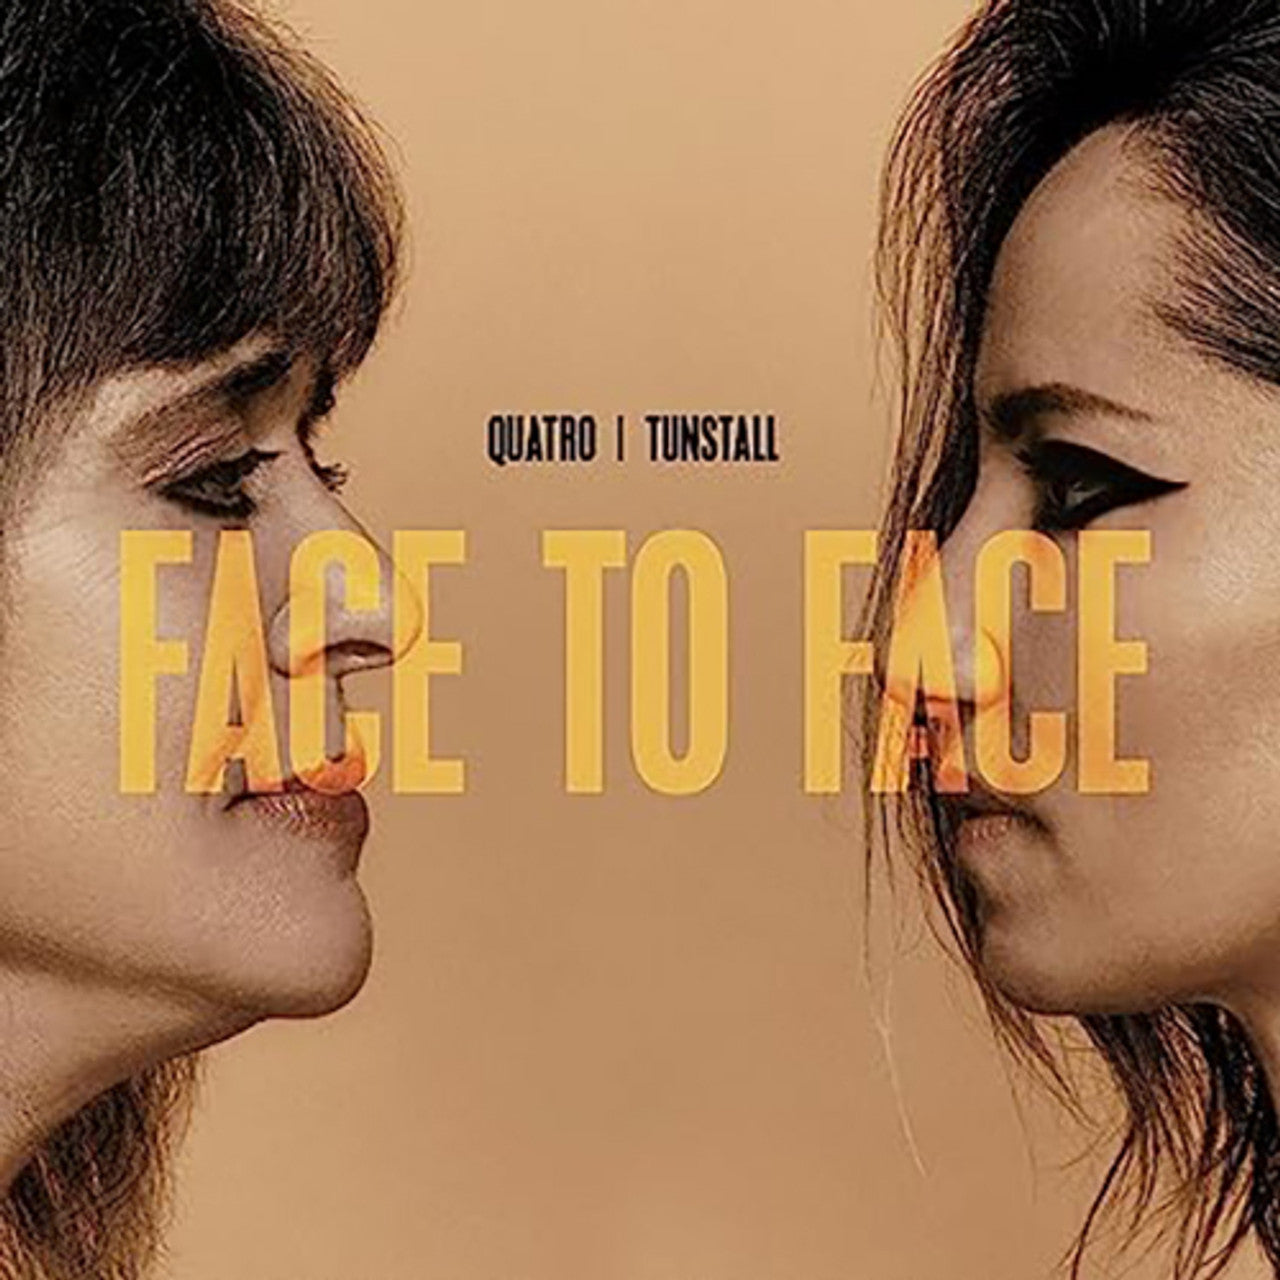 QUATRO / TUNSTALL - FACE TO FACE - VINYL LP